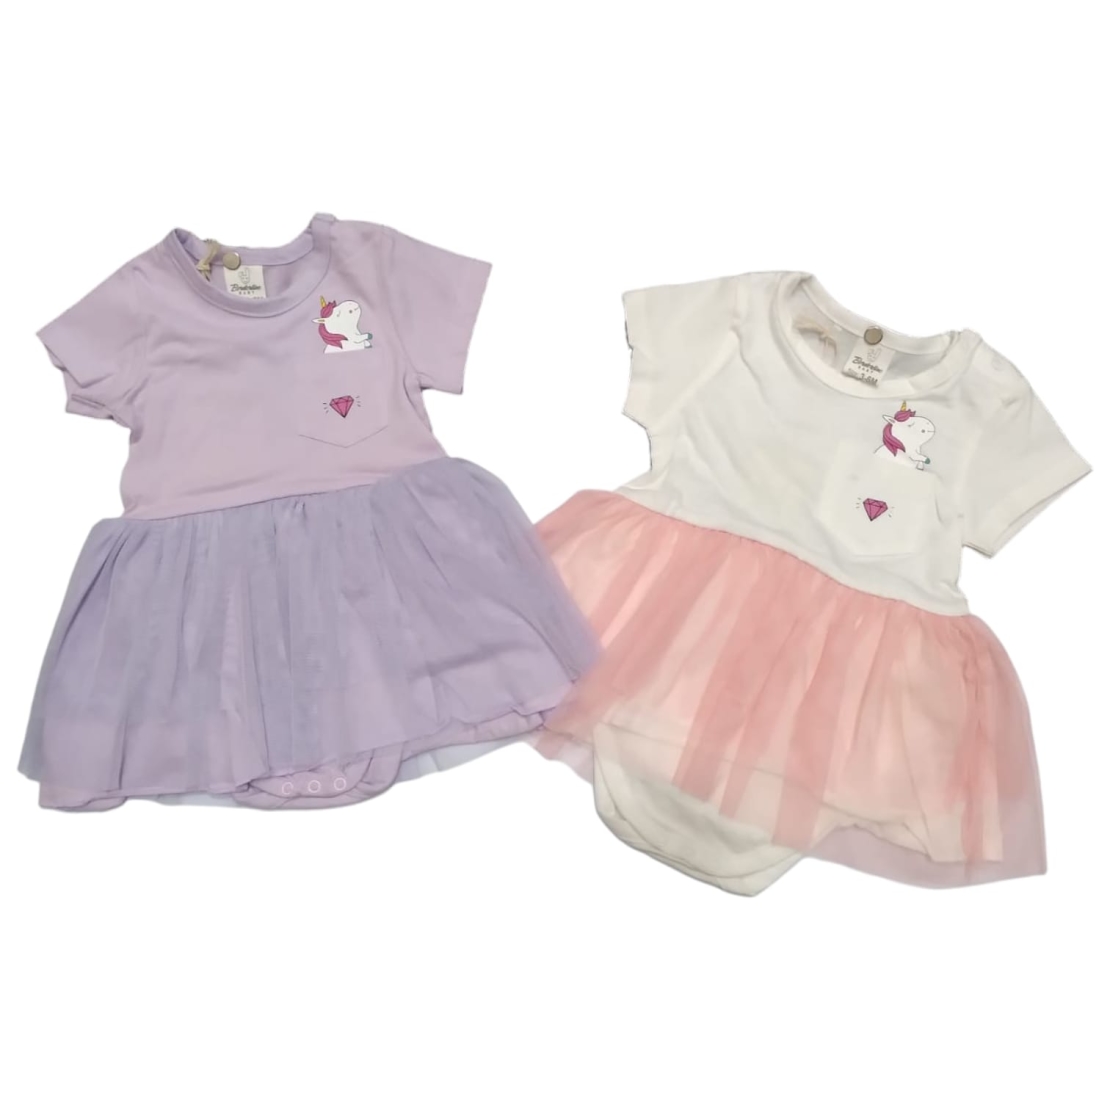 בגד גוף שמלה חד קרן (לבן/סגול) 3-24M תינוקות בנות